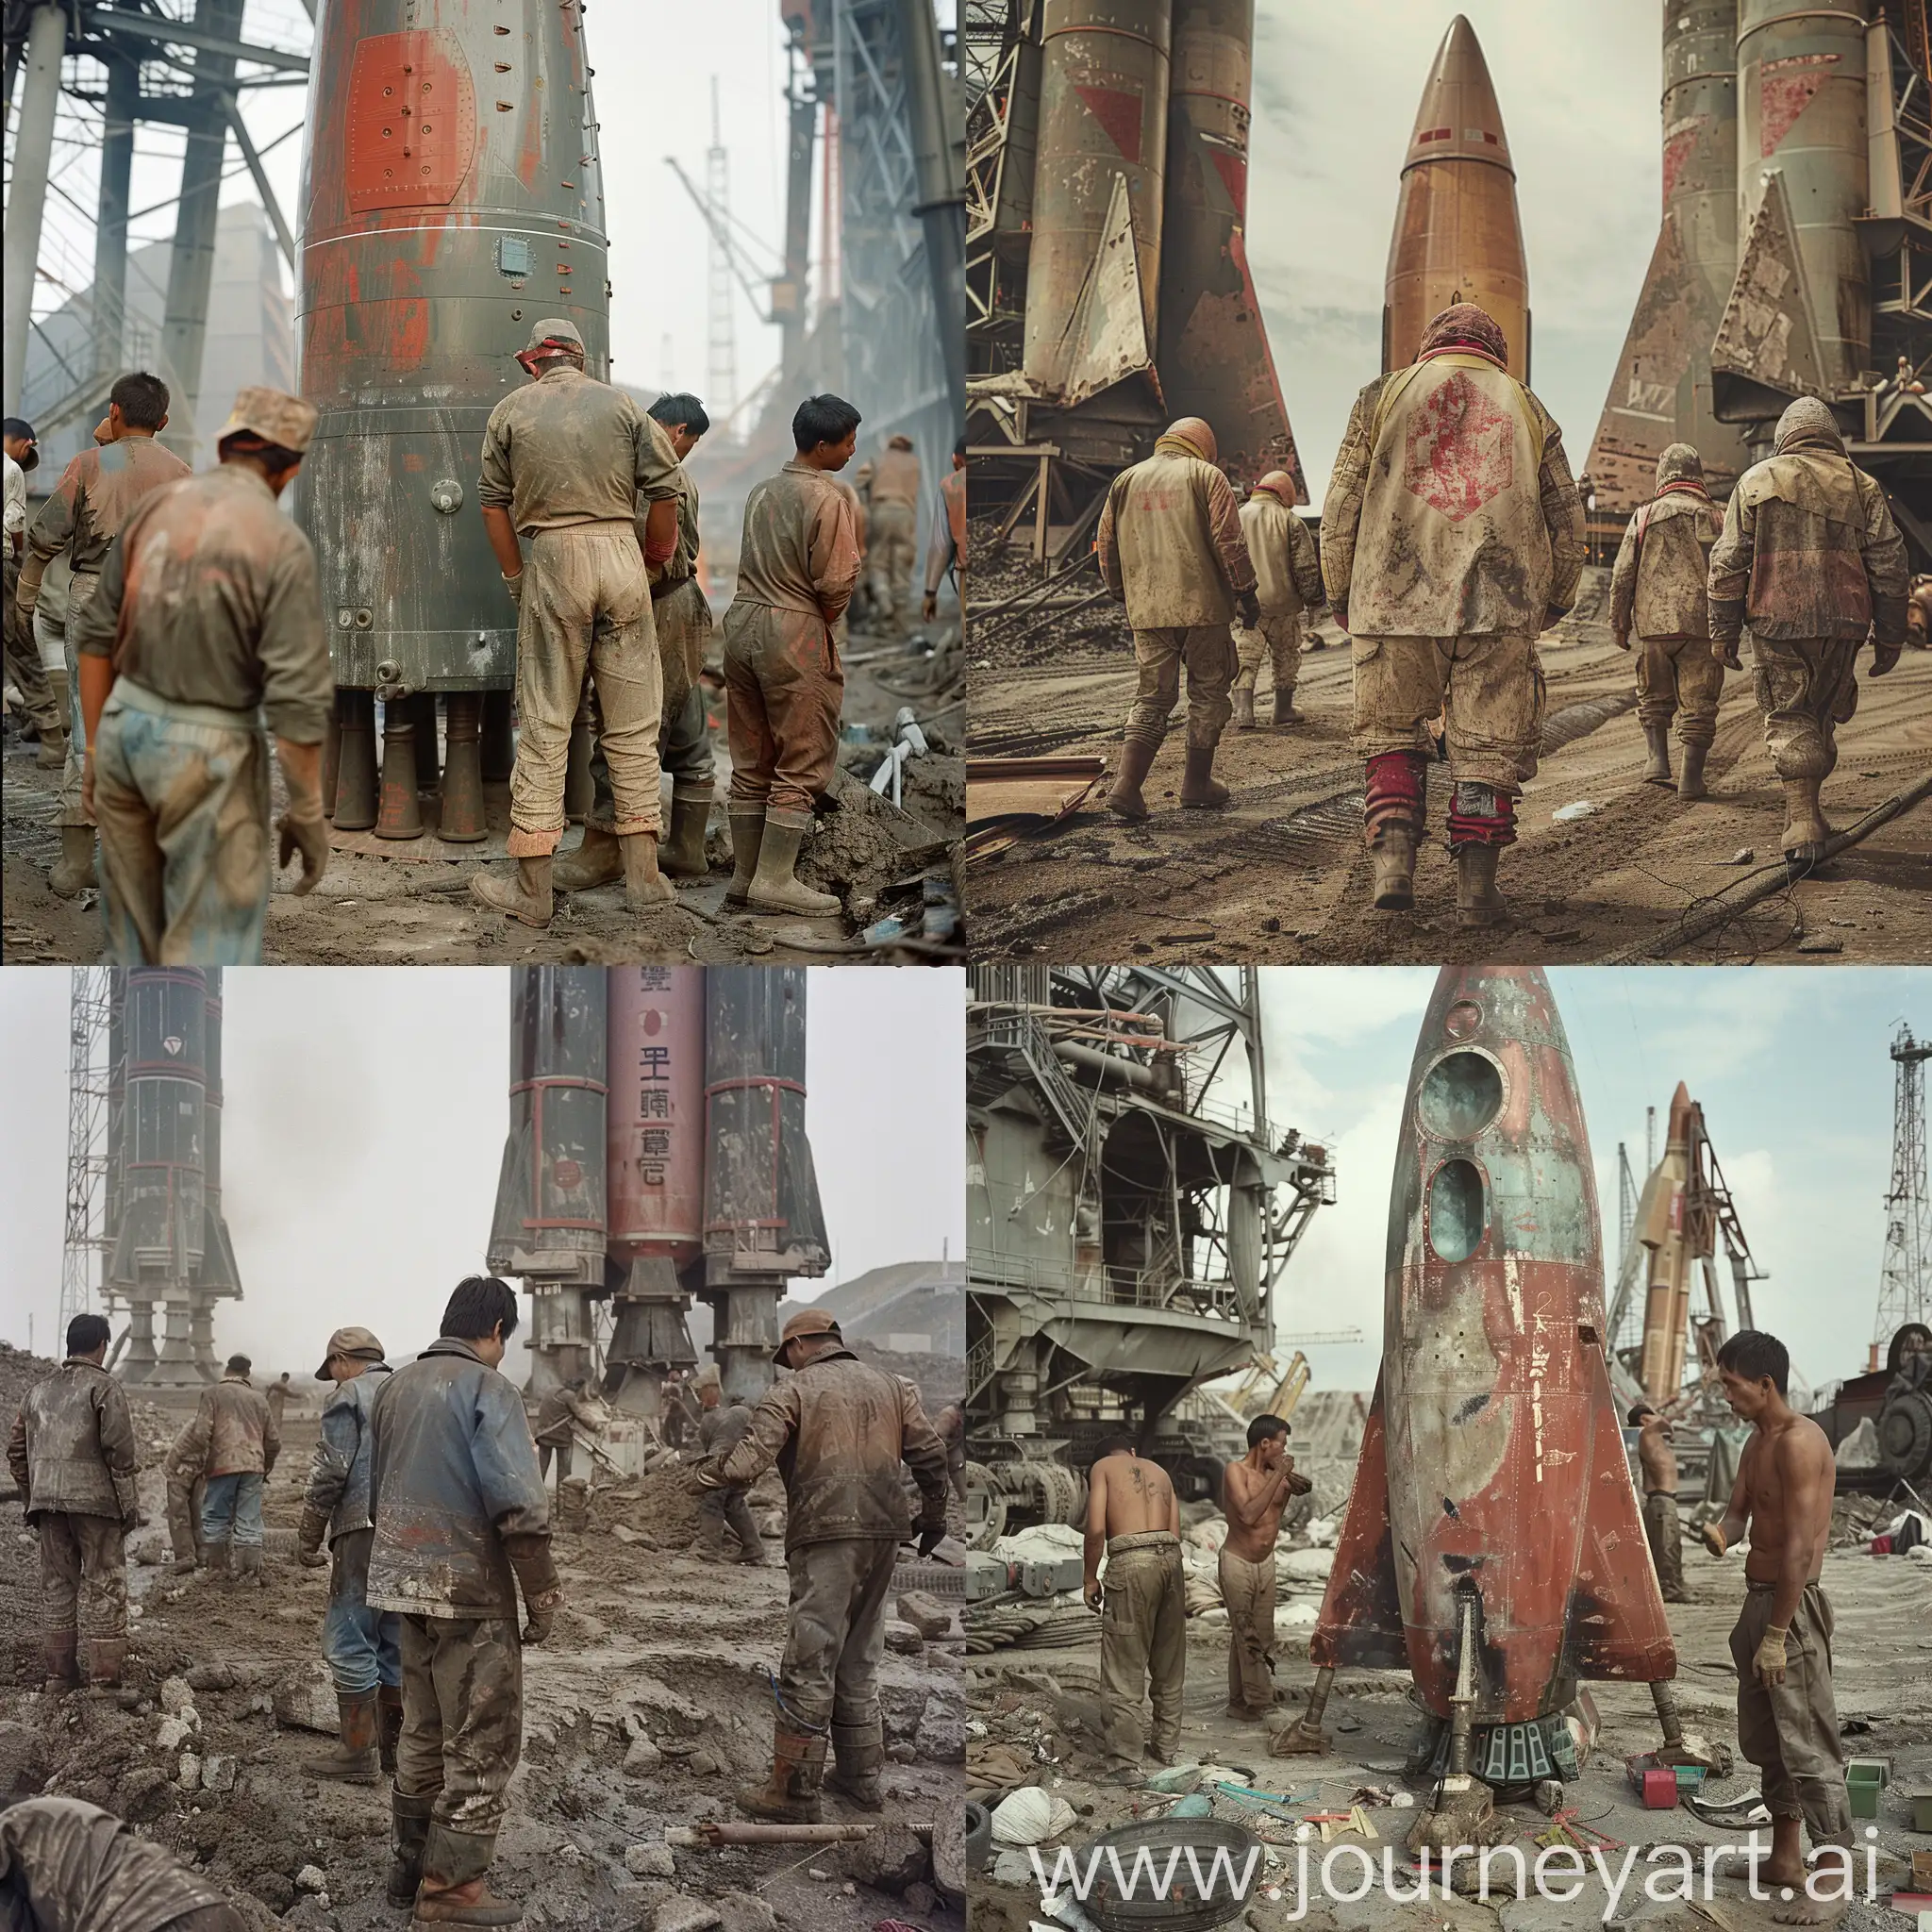 一个火箭发射站里，几个工人正在辛苦地劳动，他们的衣服很破旧，照片风格